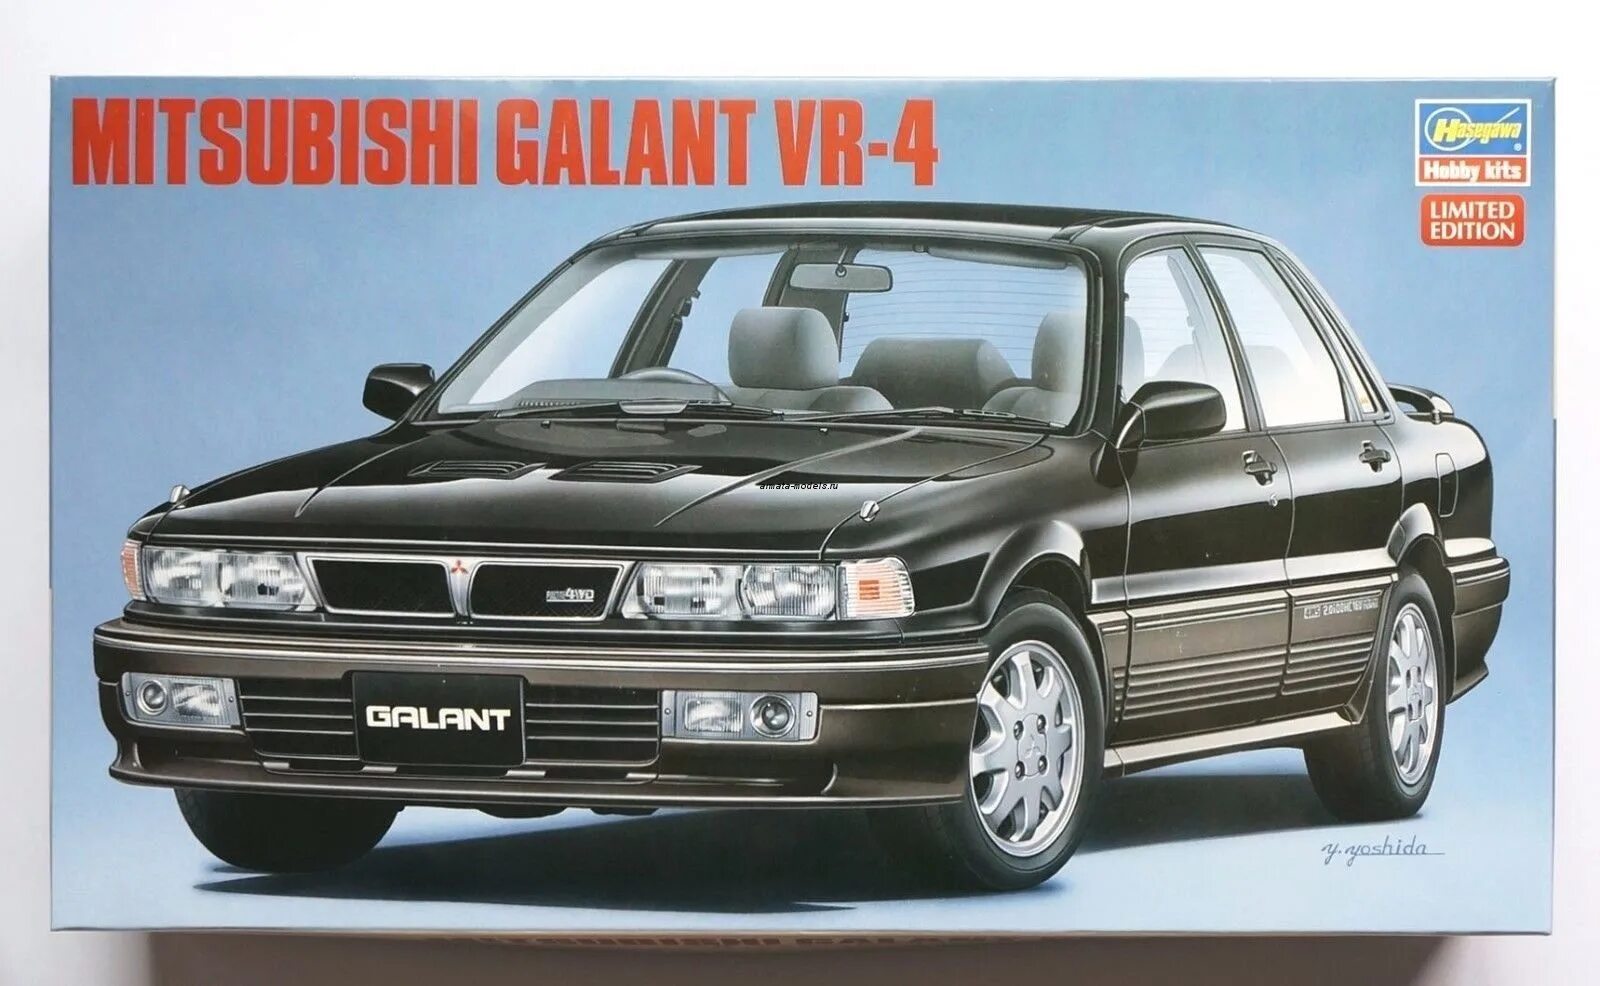 Mitsubishi Galant vr4 1:24. Galant 6 1/24. Модель автомобиля Mitsubishi Galant vr6 1:24. Hasegawa 20546-автомобиль Mitsubishi Galant VR-4. Mitsubishi 24